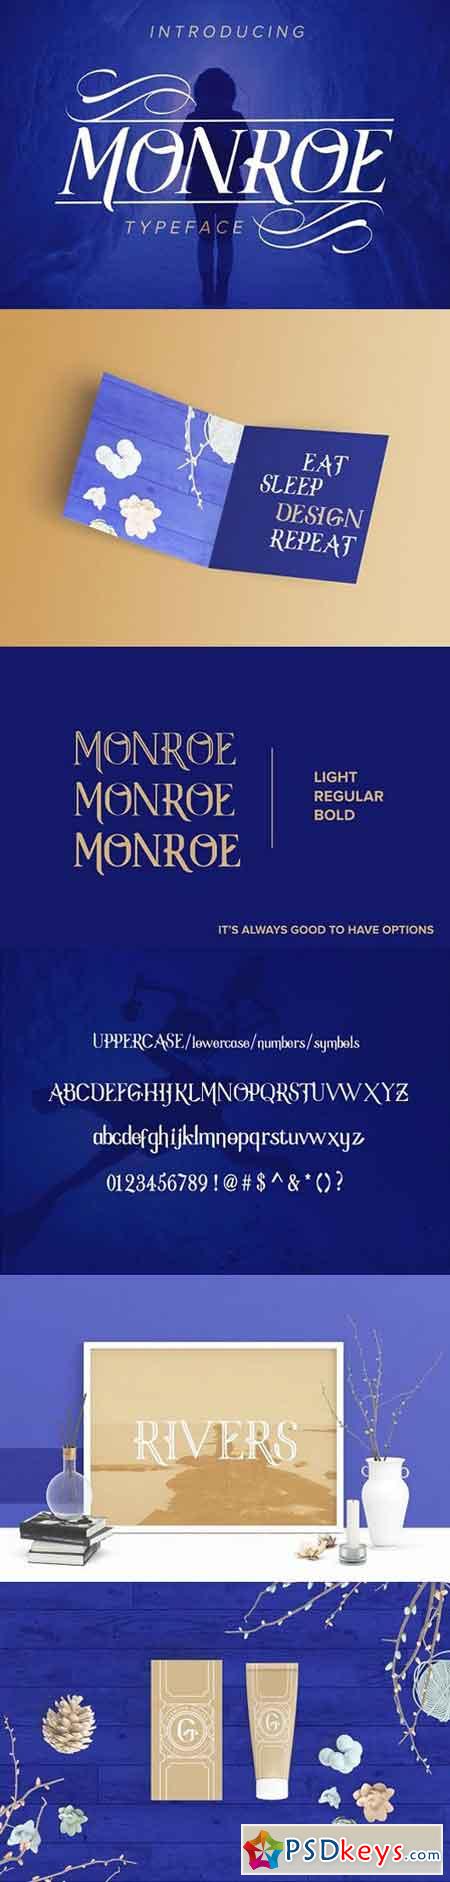 Monroe Font Family NEW 1323520